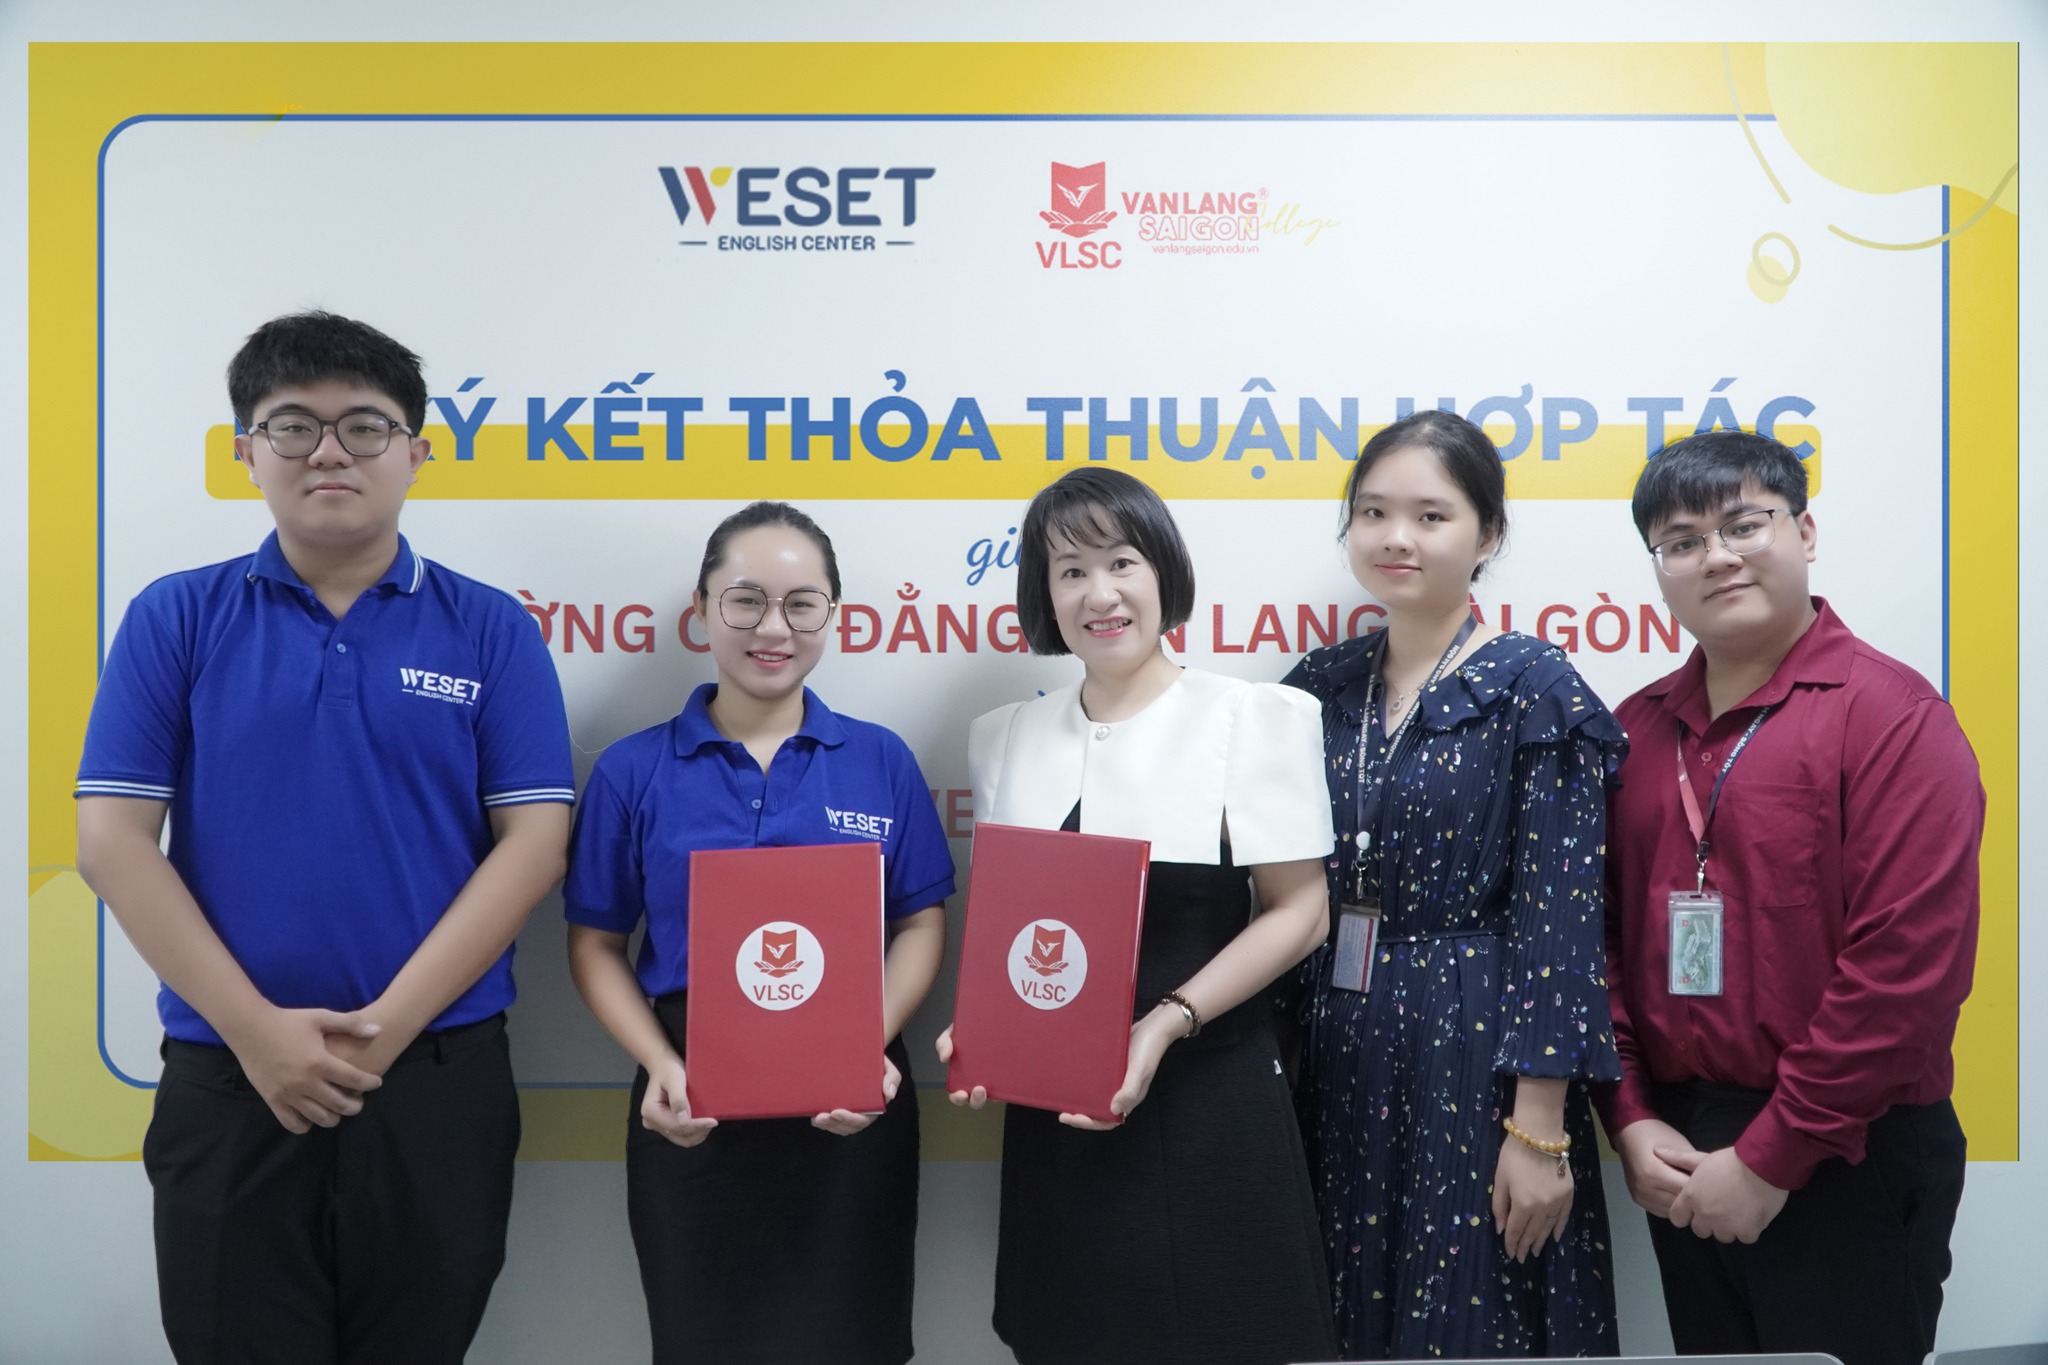 Cao đẳng Văn Lang Sài Gòn và WESET English Center ký kết hợp tác, mang đến thêm nhiều cơ hội rèn luyện tiếng anh thực chiến cho sinh viên VLSC 